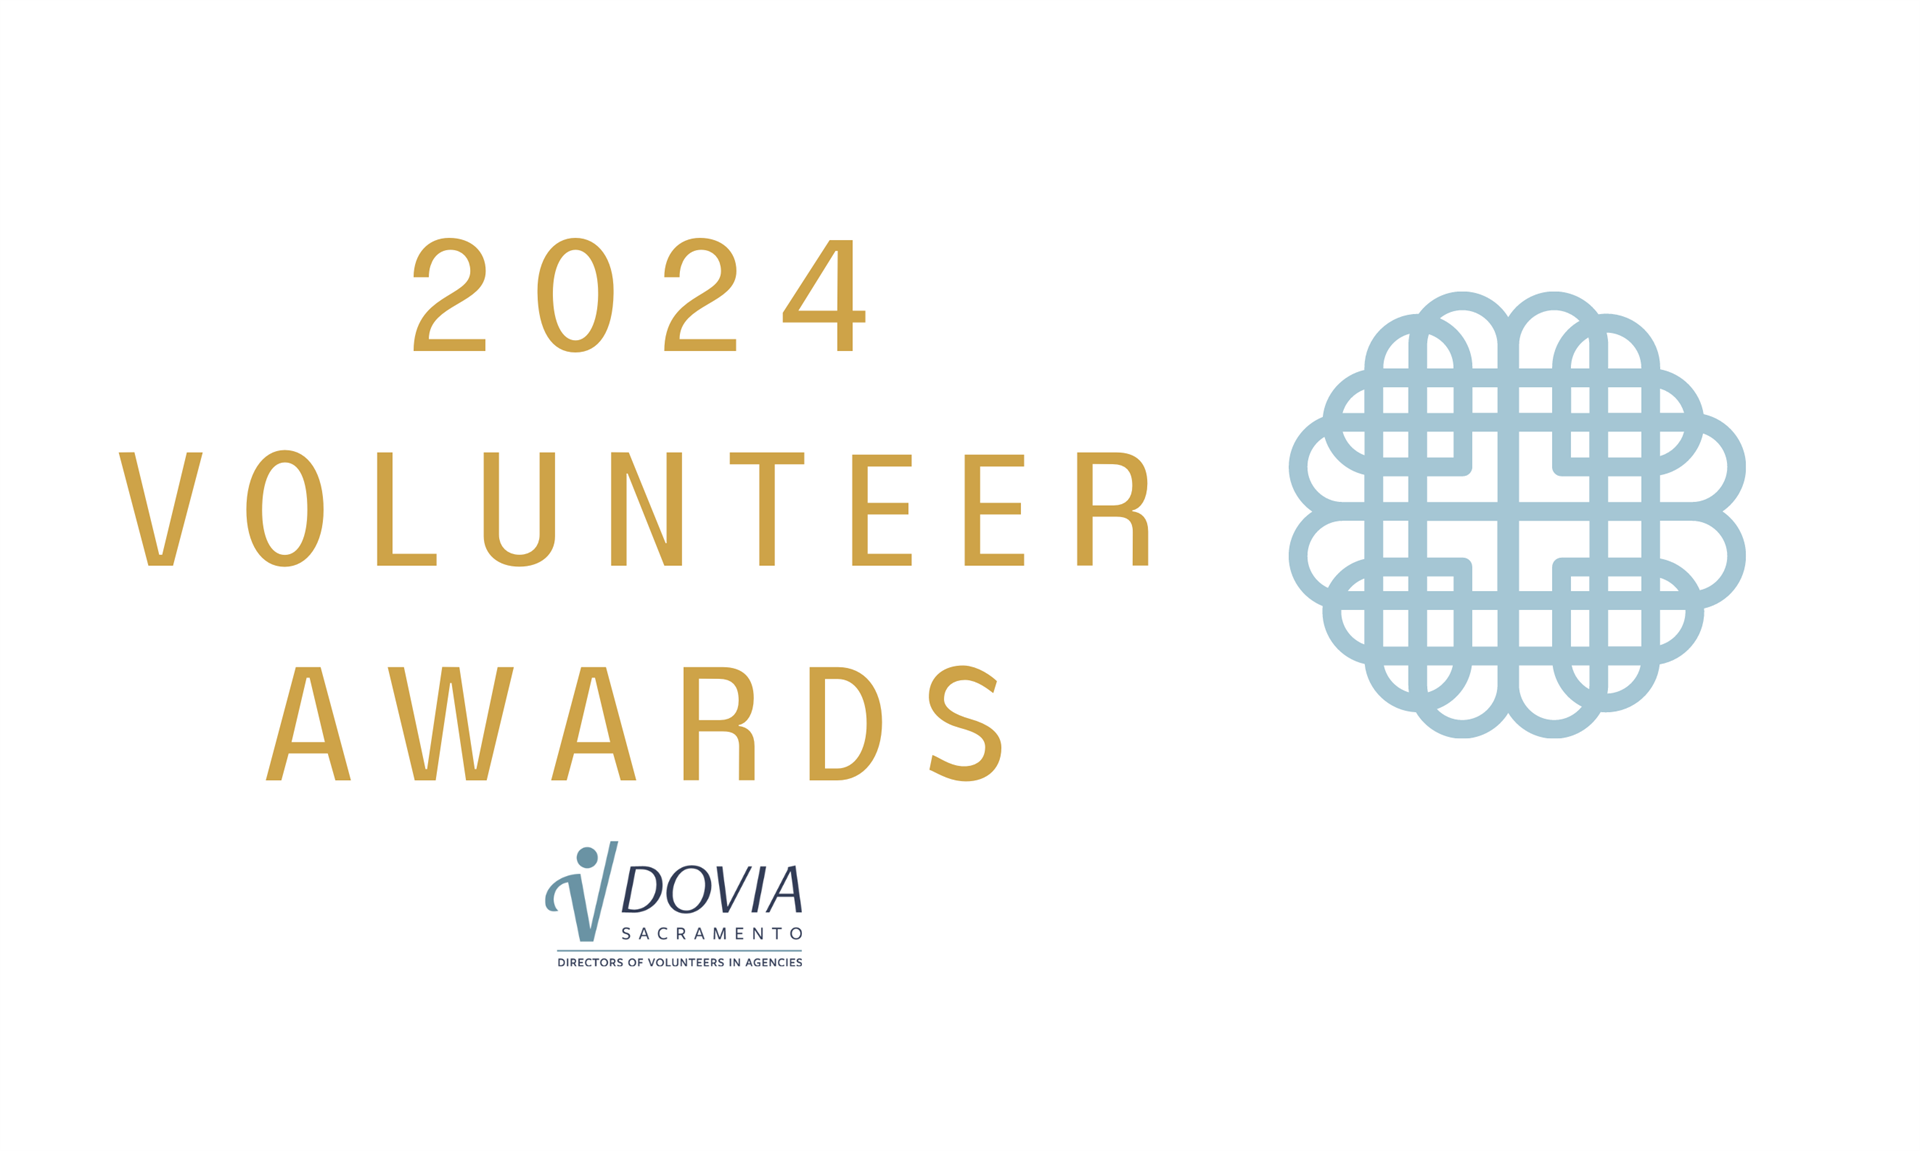 2024 Volunteer Awards logo from DOVIA